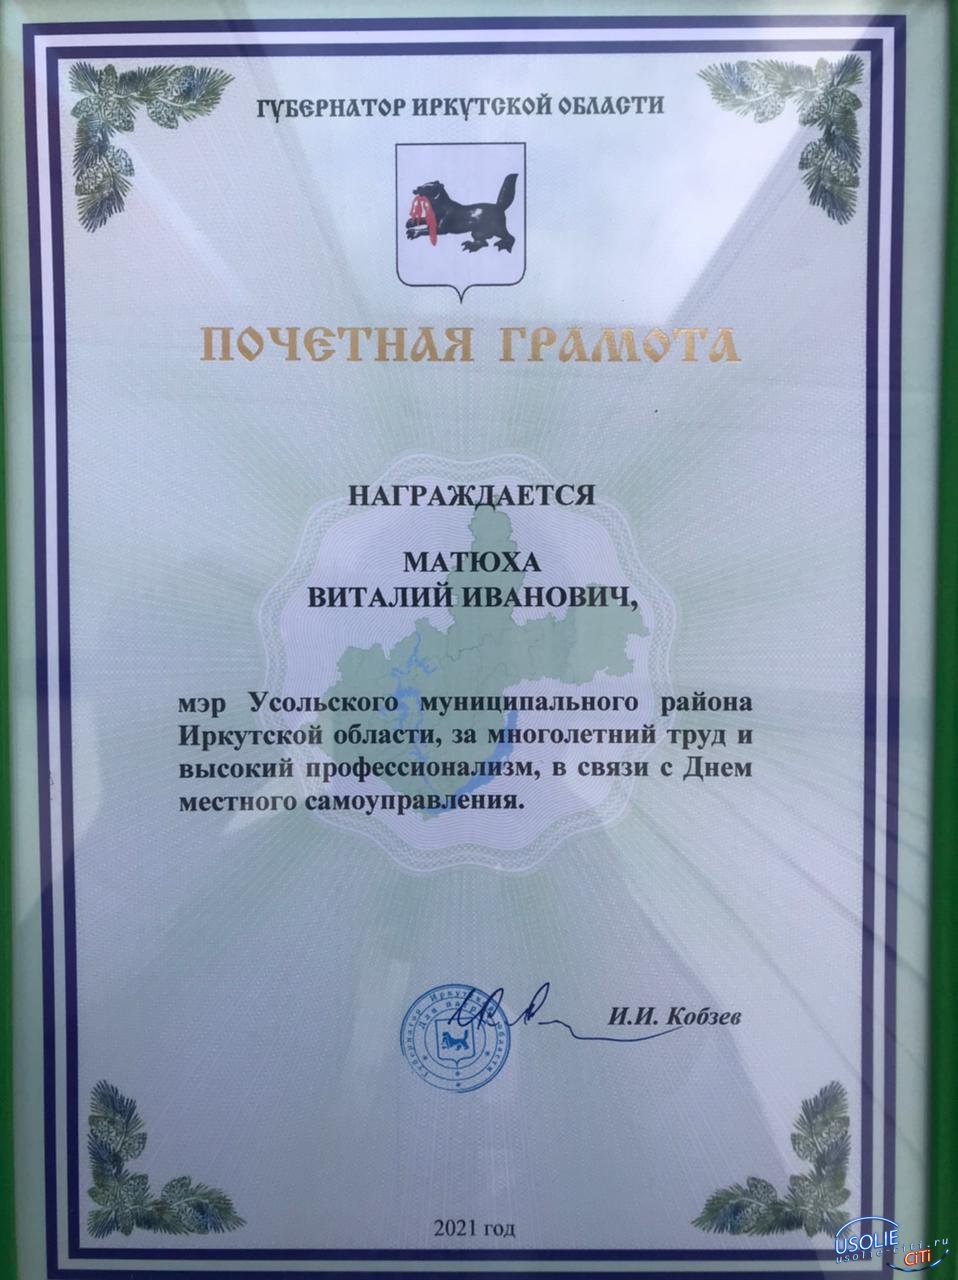 Губернатор вручил почетную грамоту мэру Усольскому району